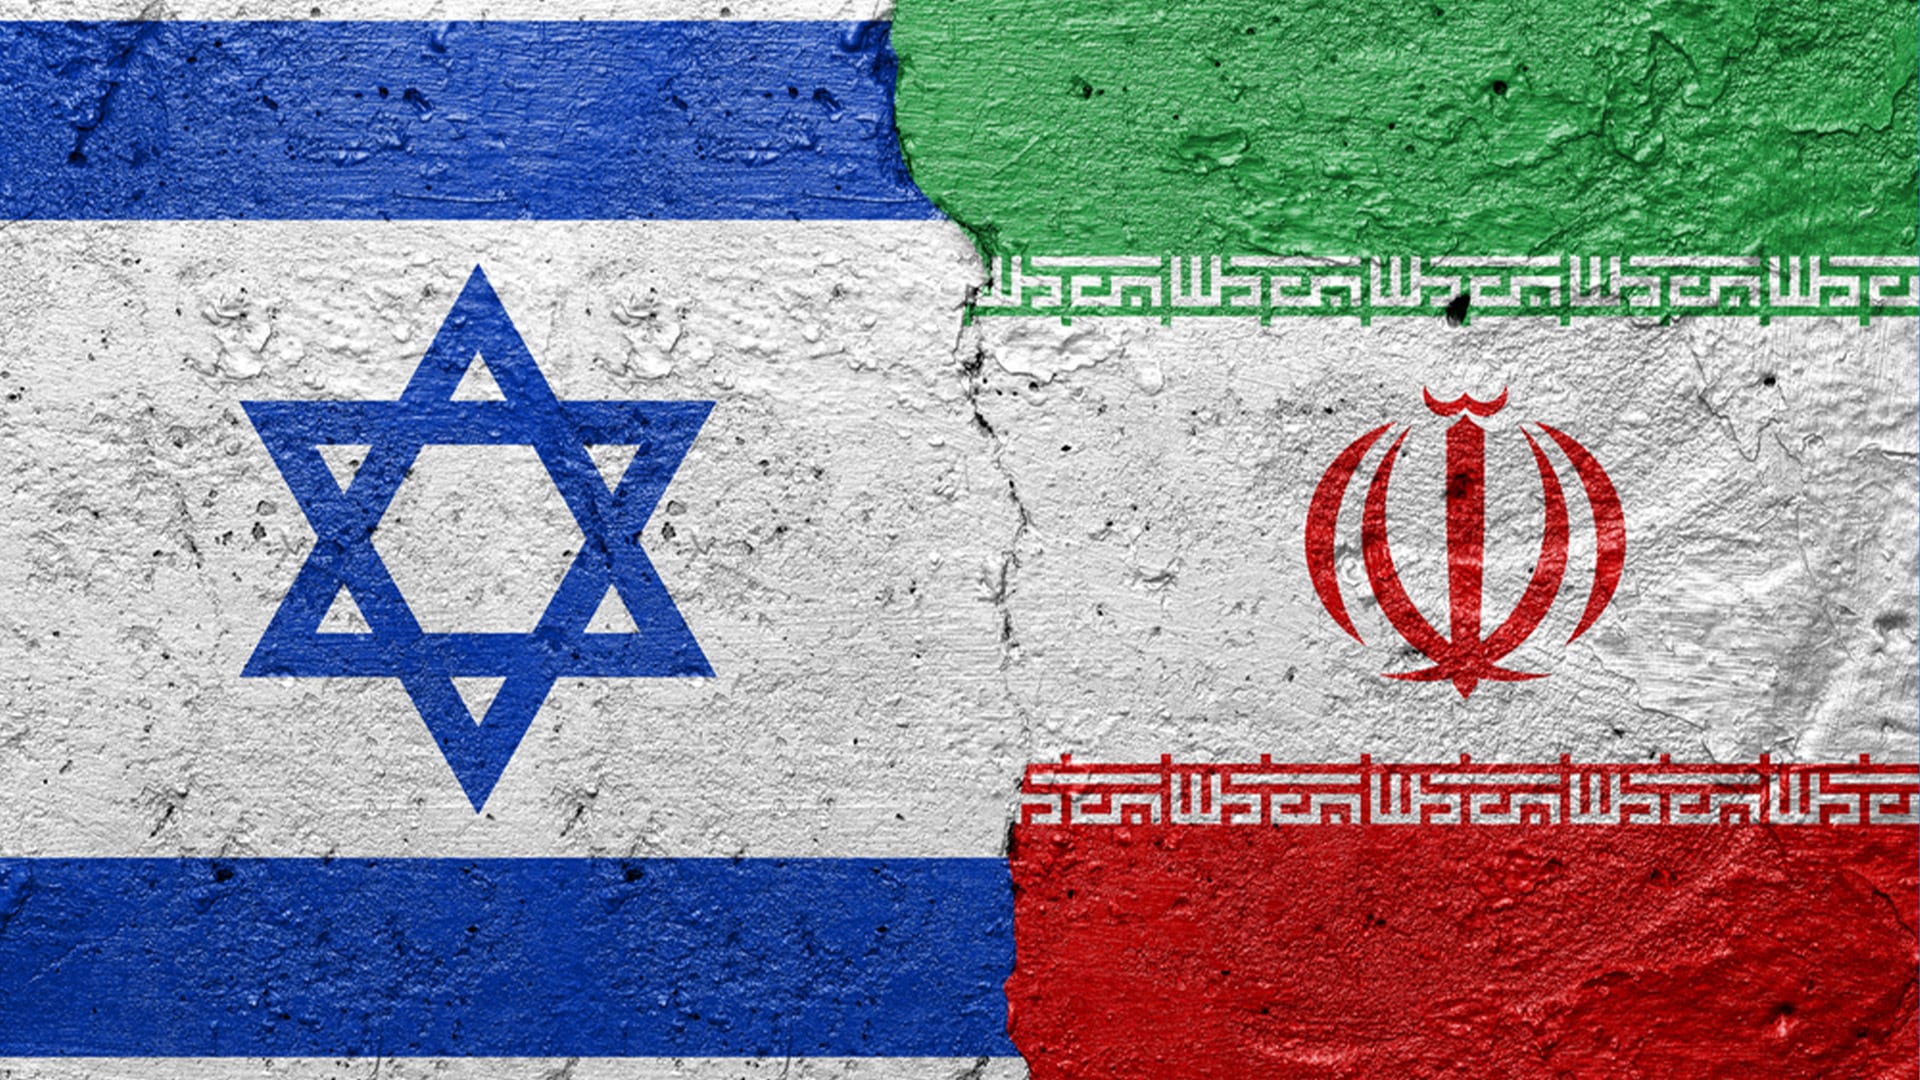 Írán představuje pro Izrael již dlouhé roky jednu z největších existenčních hrozeb. (Ilustrační foto)